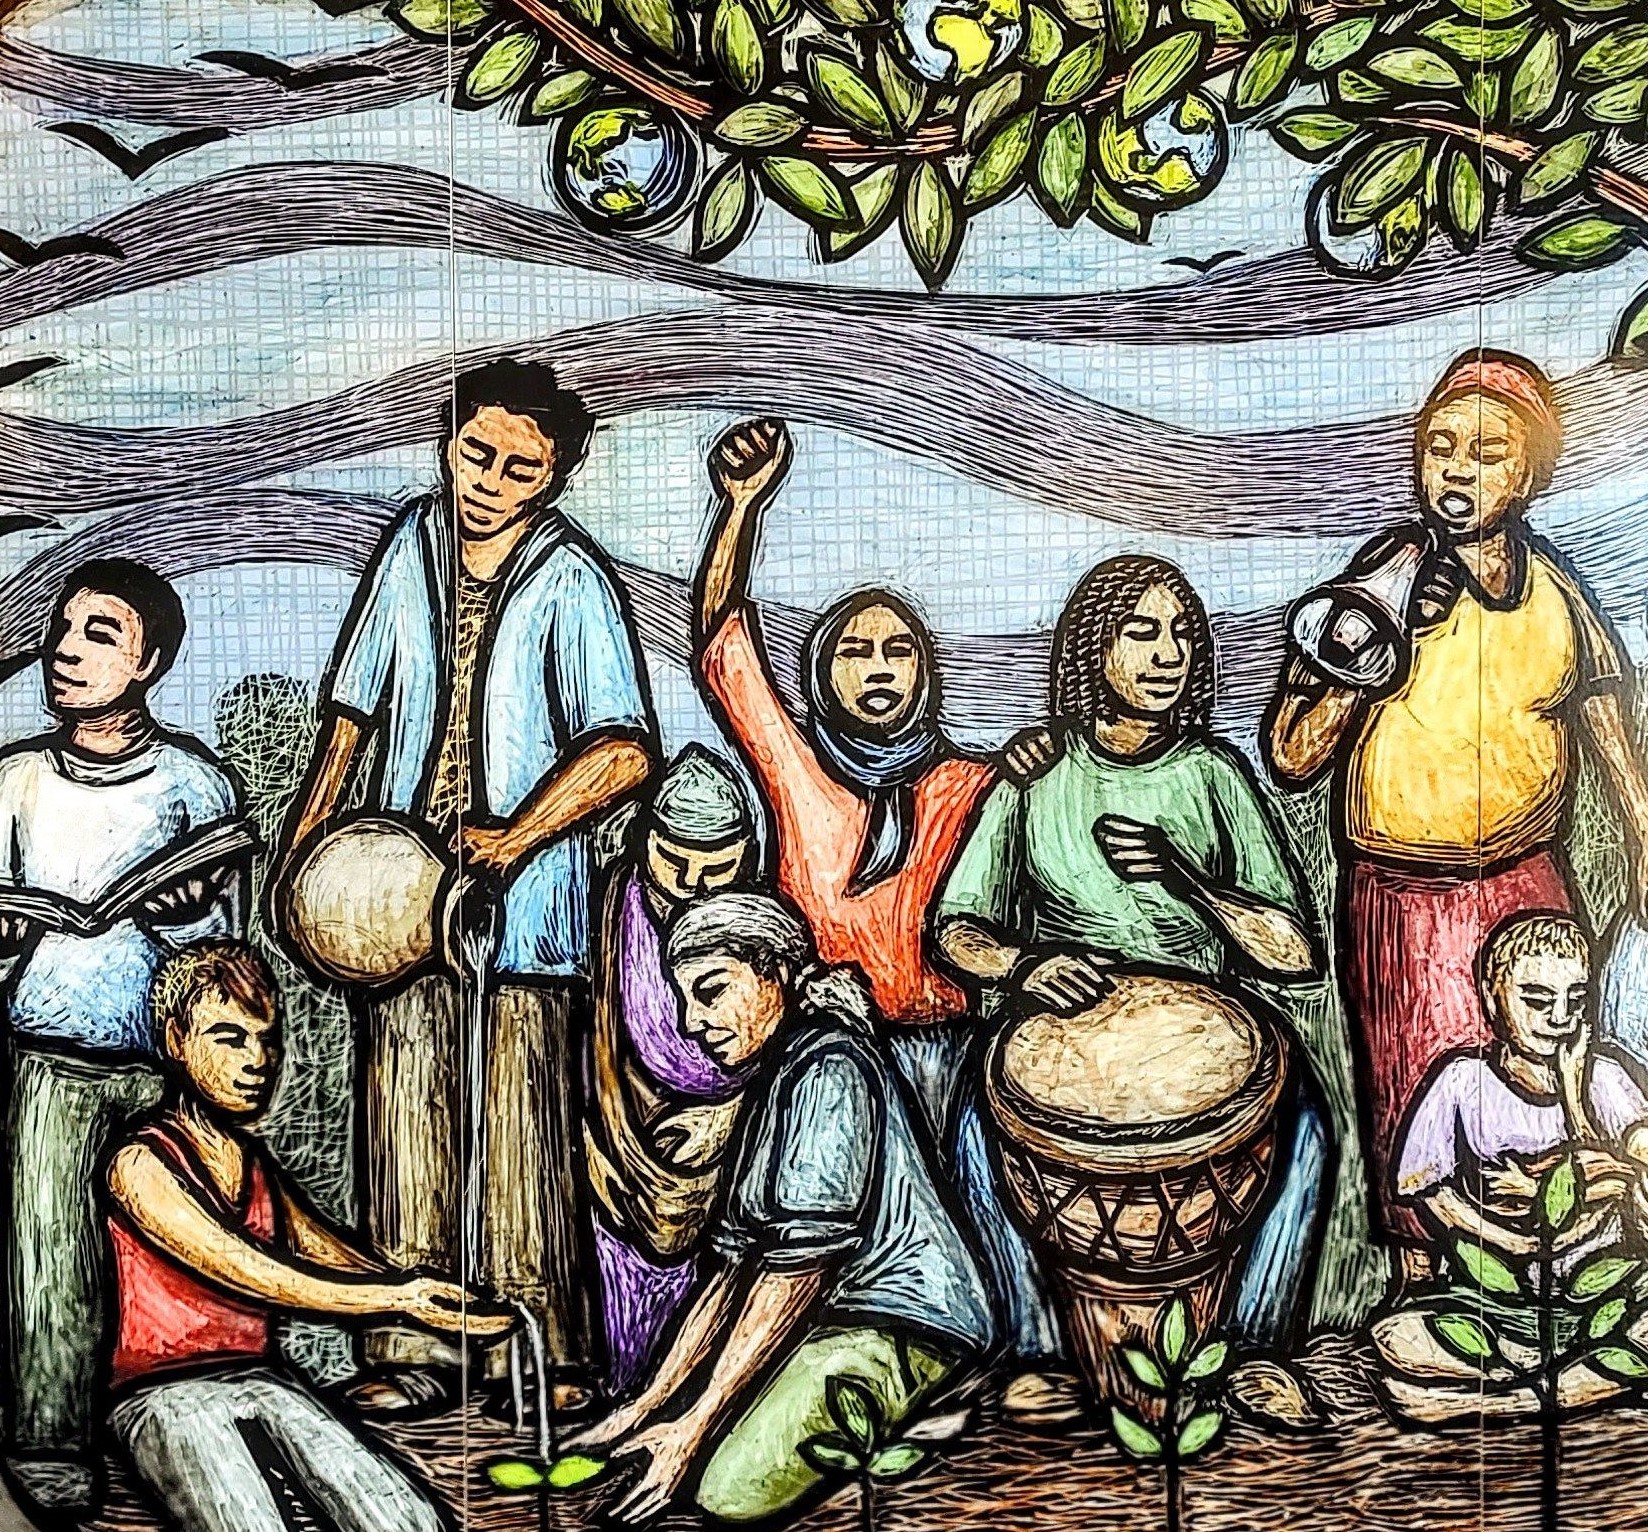 mural of people under tree